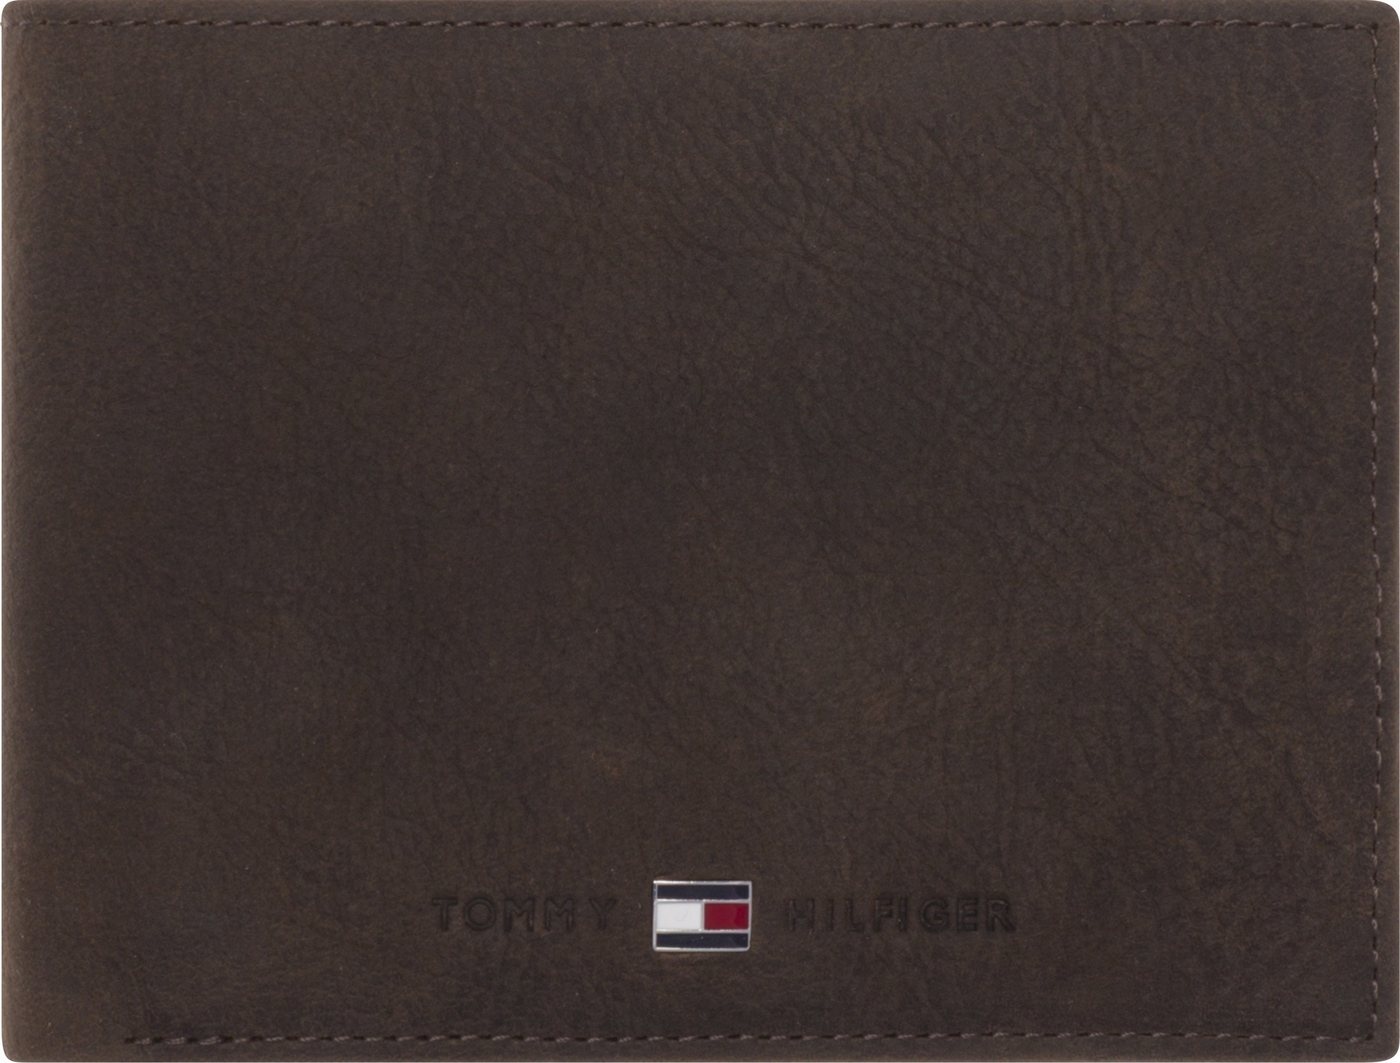 Tommy Hilfiger Geldbörse JOHNSON CC AND COIN POCKET, im kleinen Format aus hochwertigem Leder braun